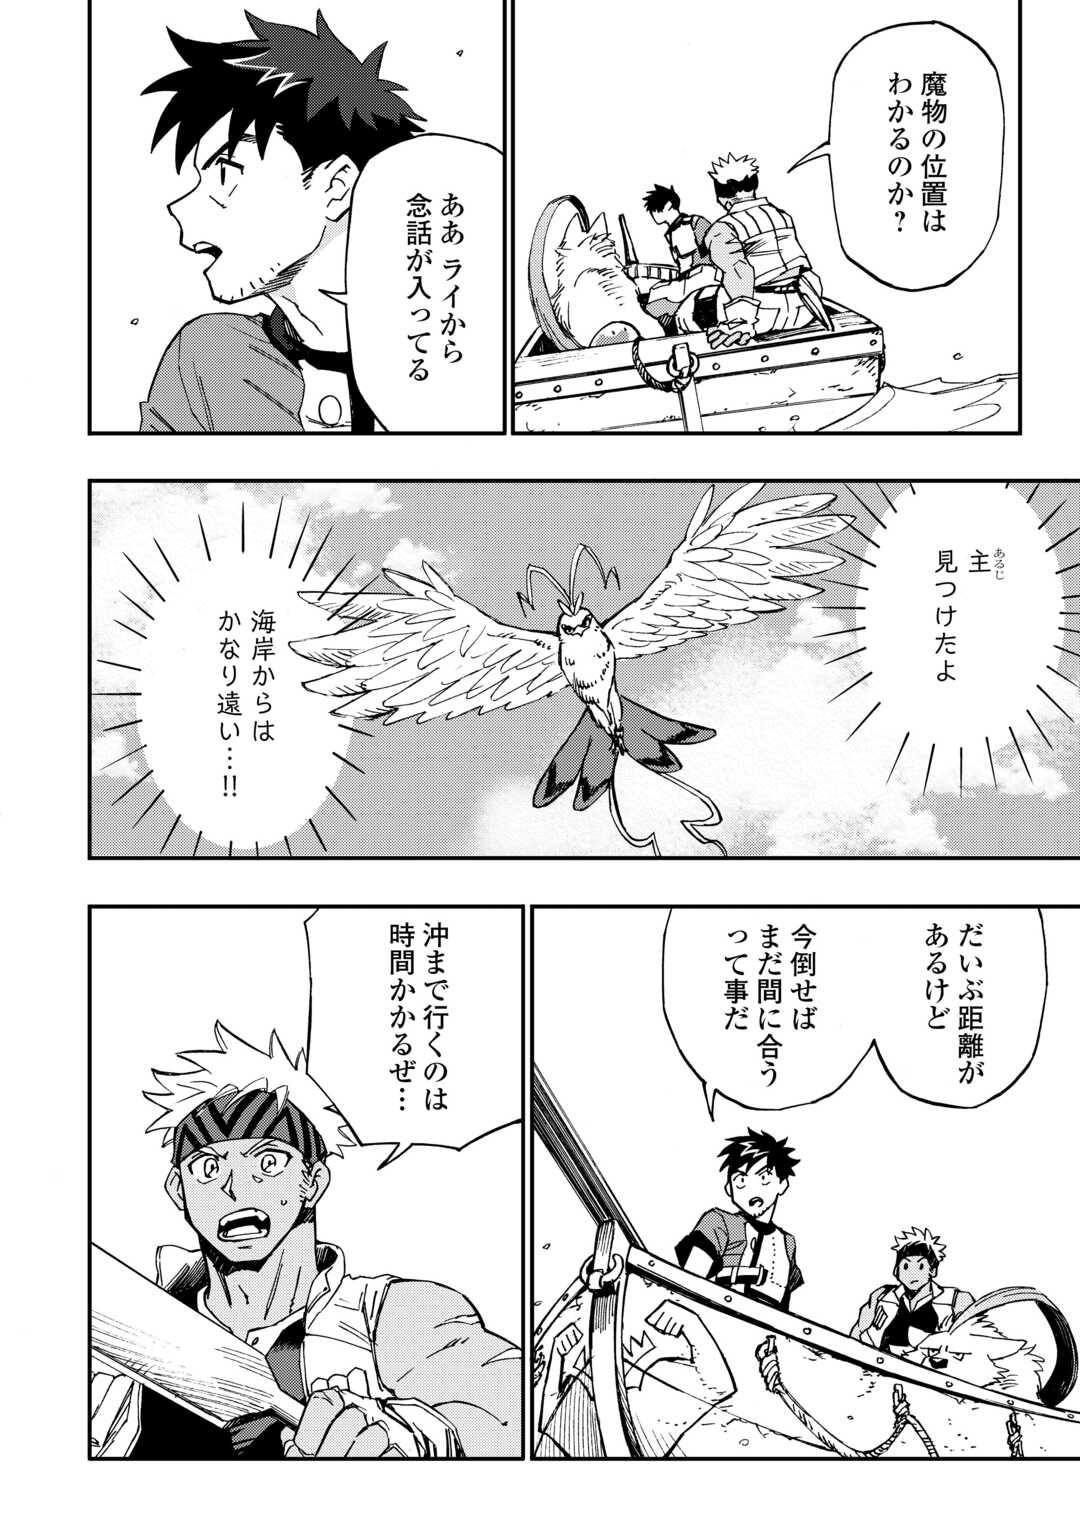 Yosoji No Ossan, Kamisama Kara Cheat Nouryoku O 9-ko Morau - Chapter 24 - Page 2